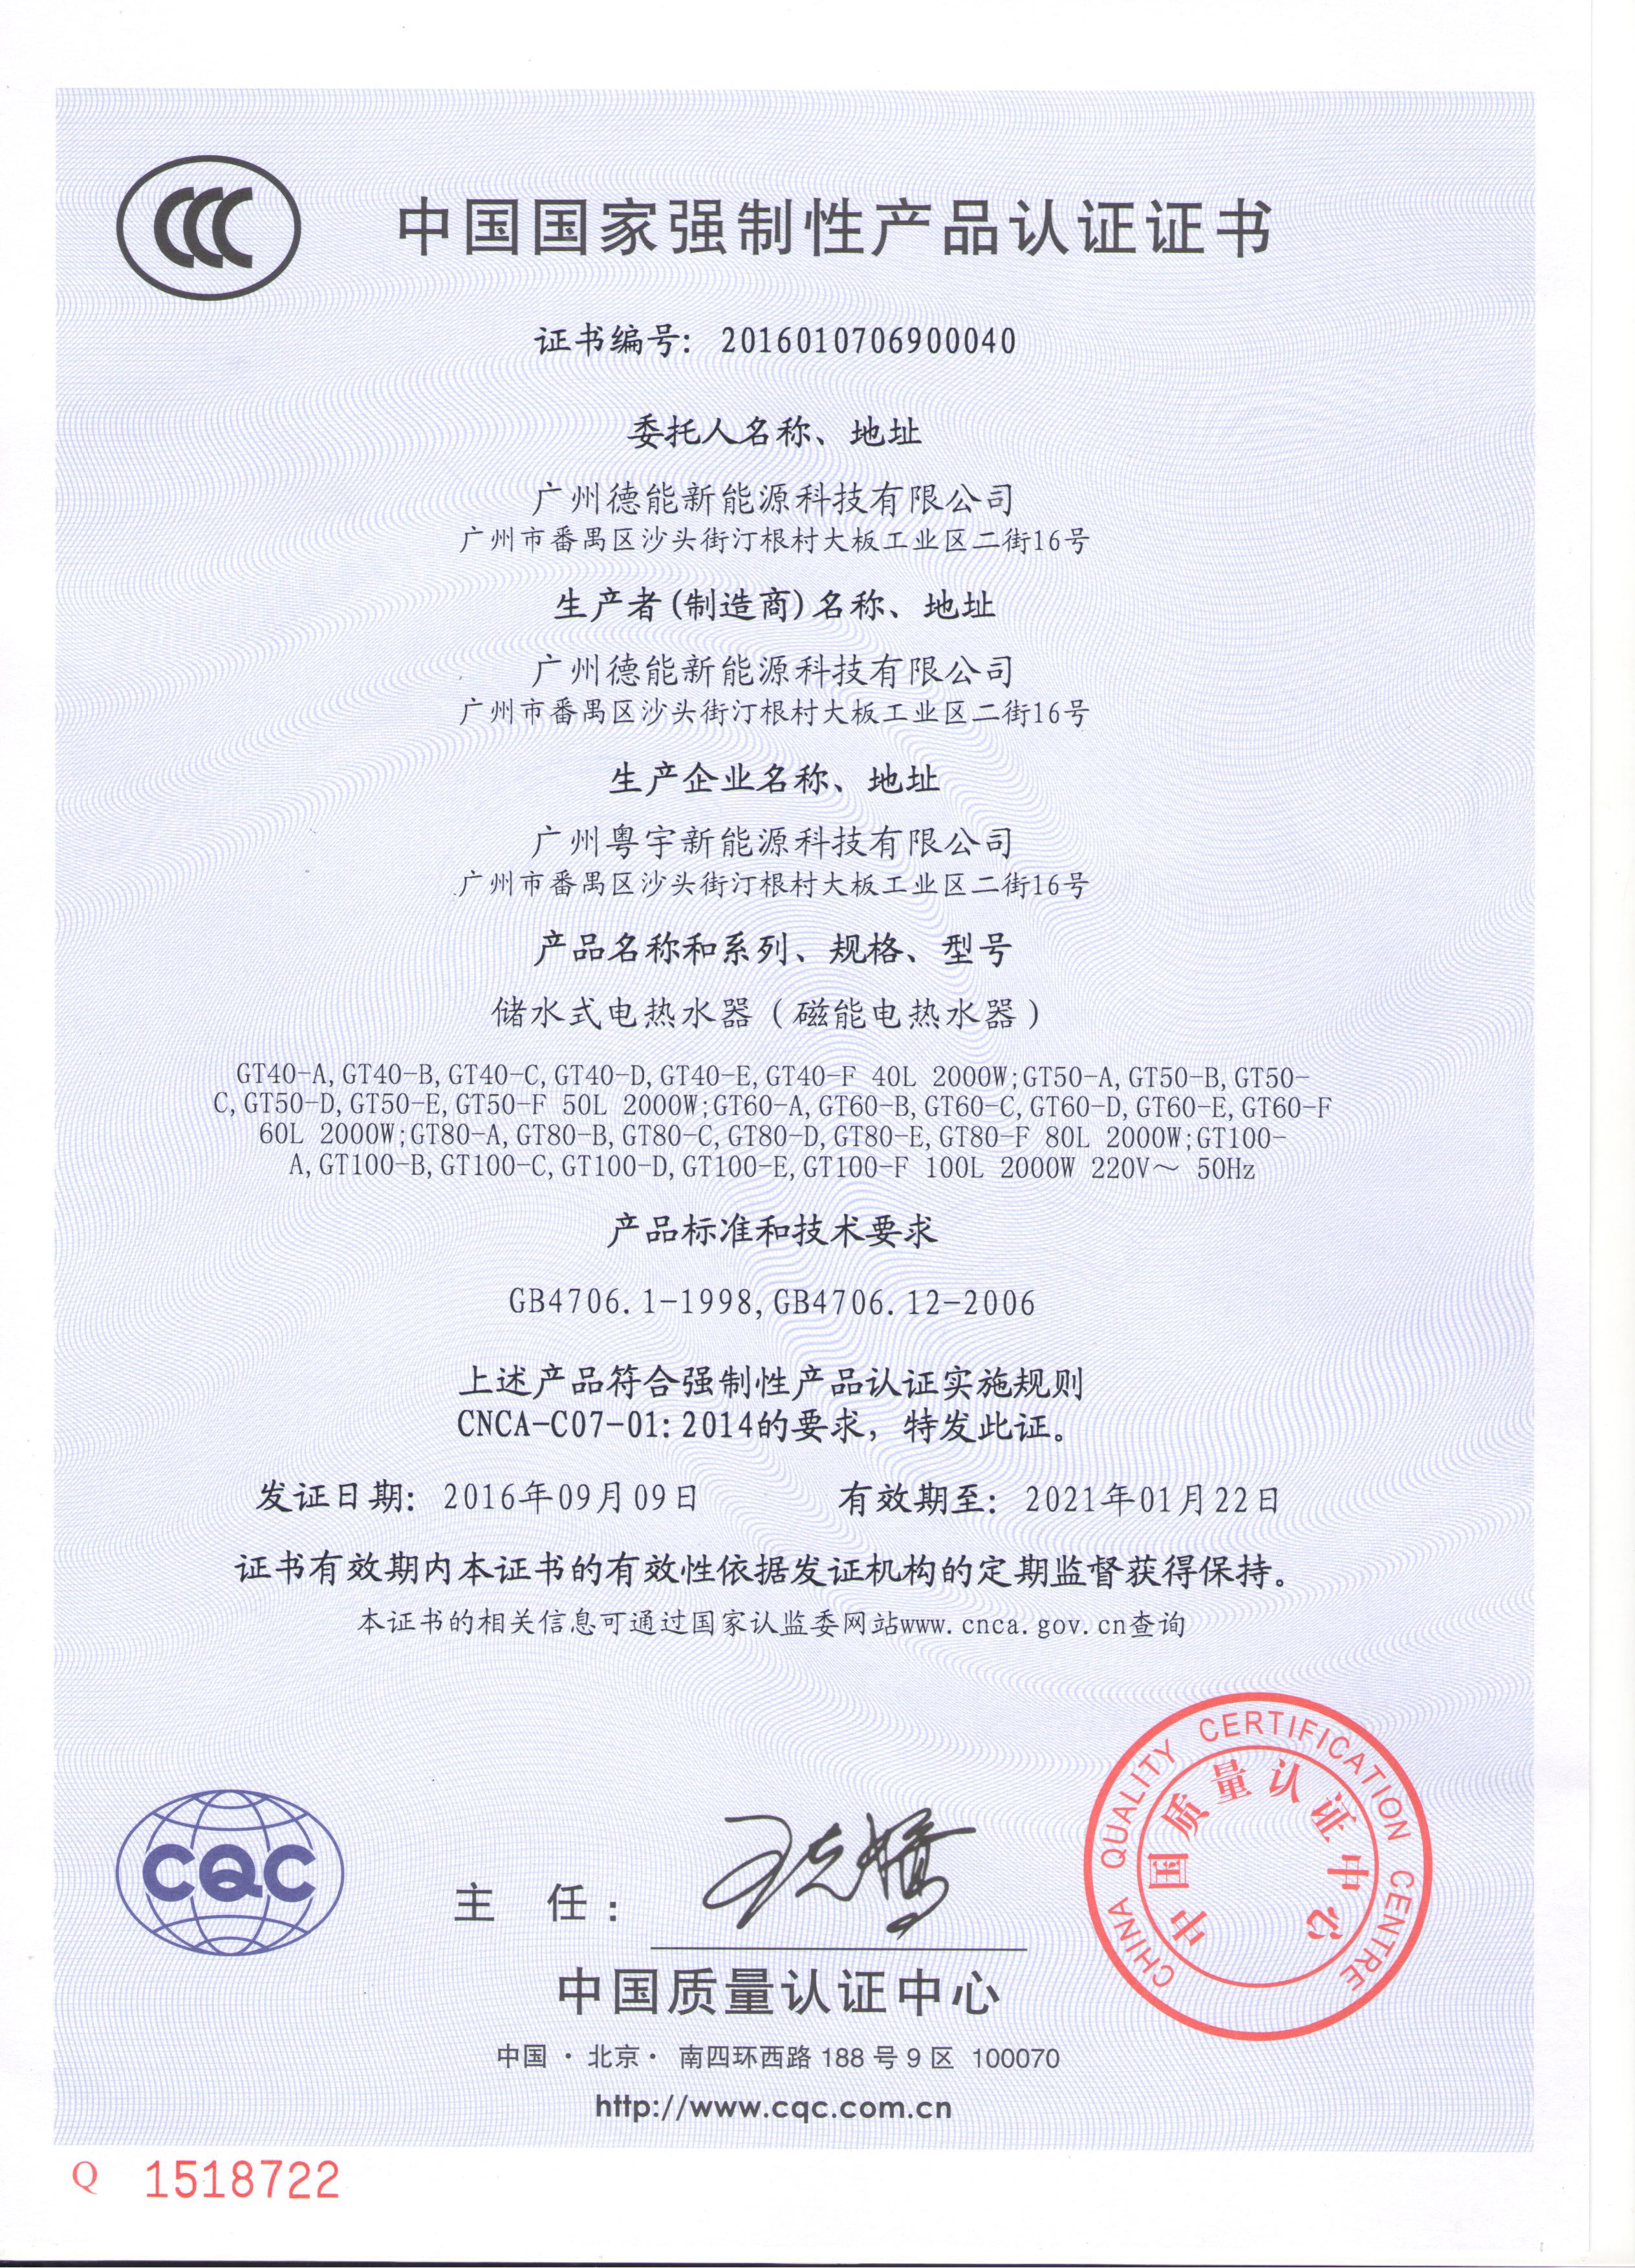 德能磁能CCC证书（中文版）.jpg